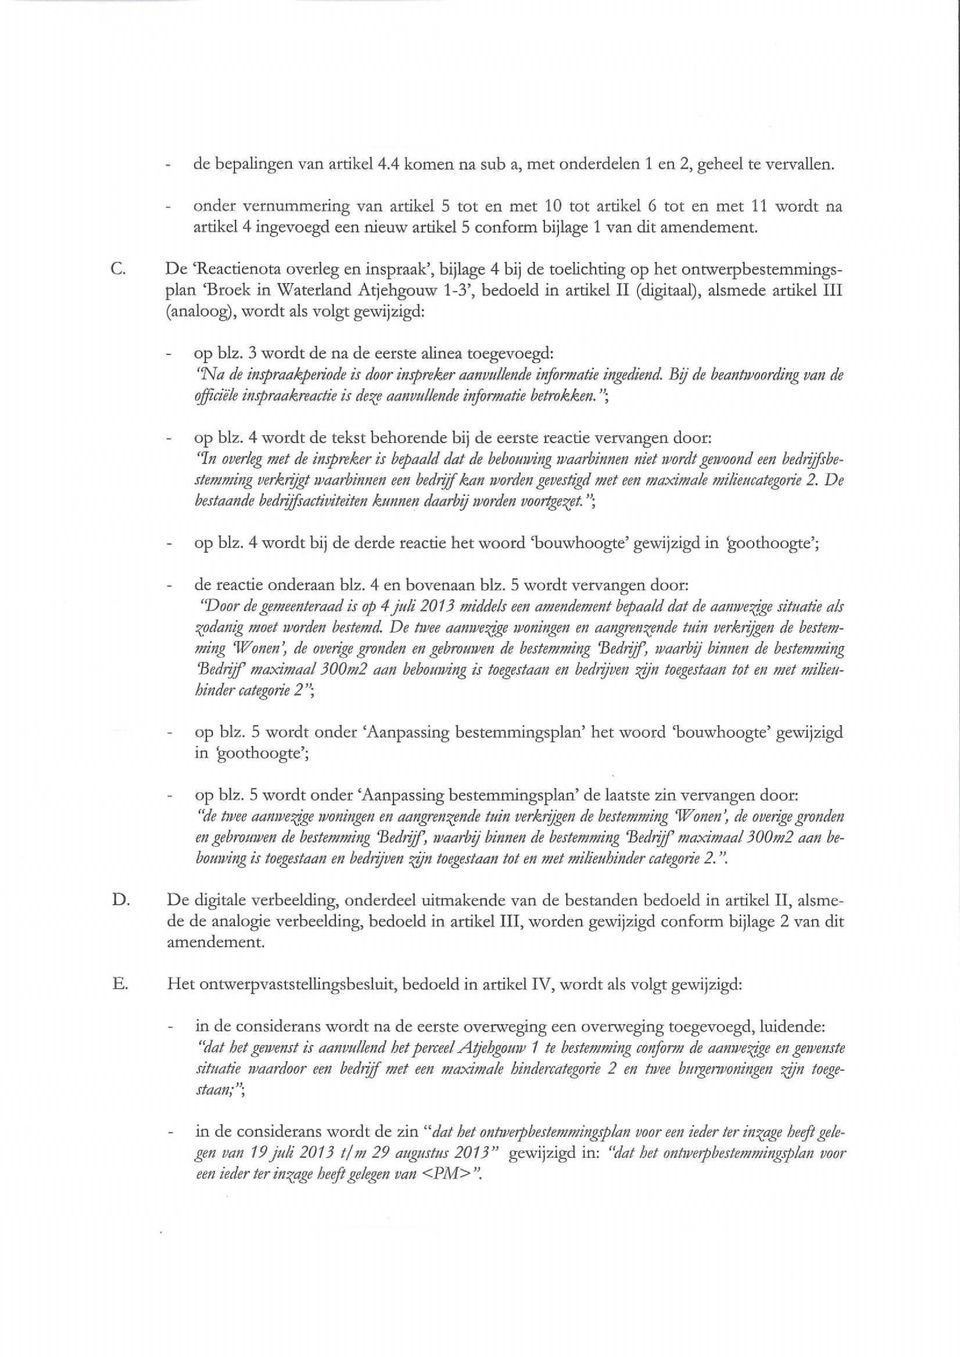 De 'Reactienota overleg en inspraak', bijlage 4 bij de toelichting op het ontwerpbesternmingsplan 'Broek in Waterland Atjehgouw 1 3', bedoeld in artikel II (digitaal), alsmede artikel III (analoog),